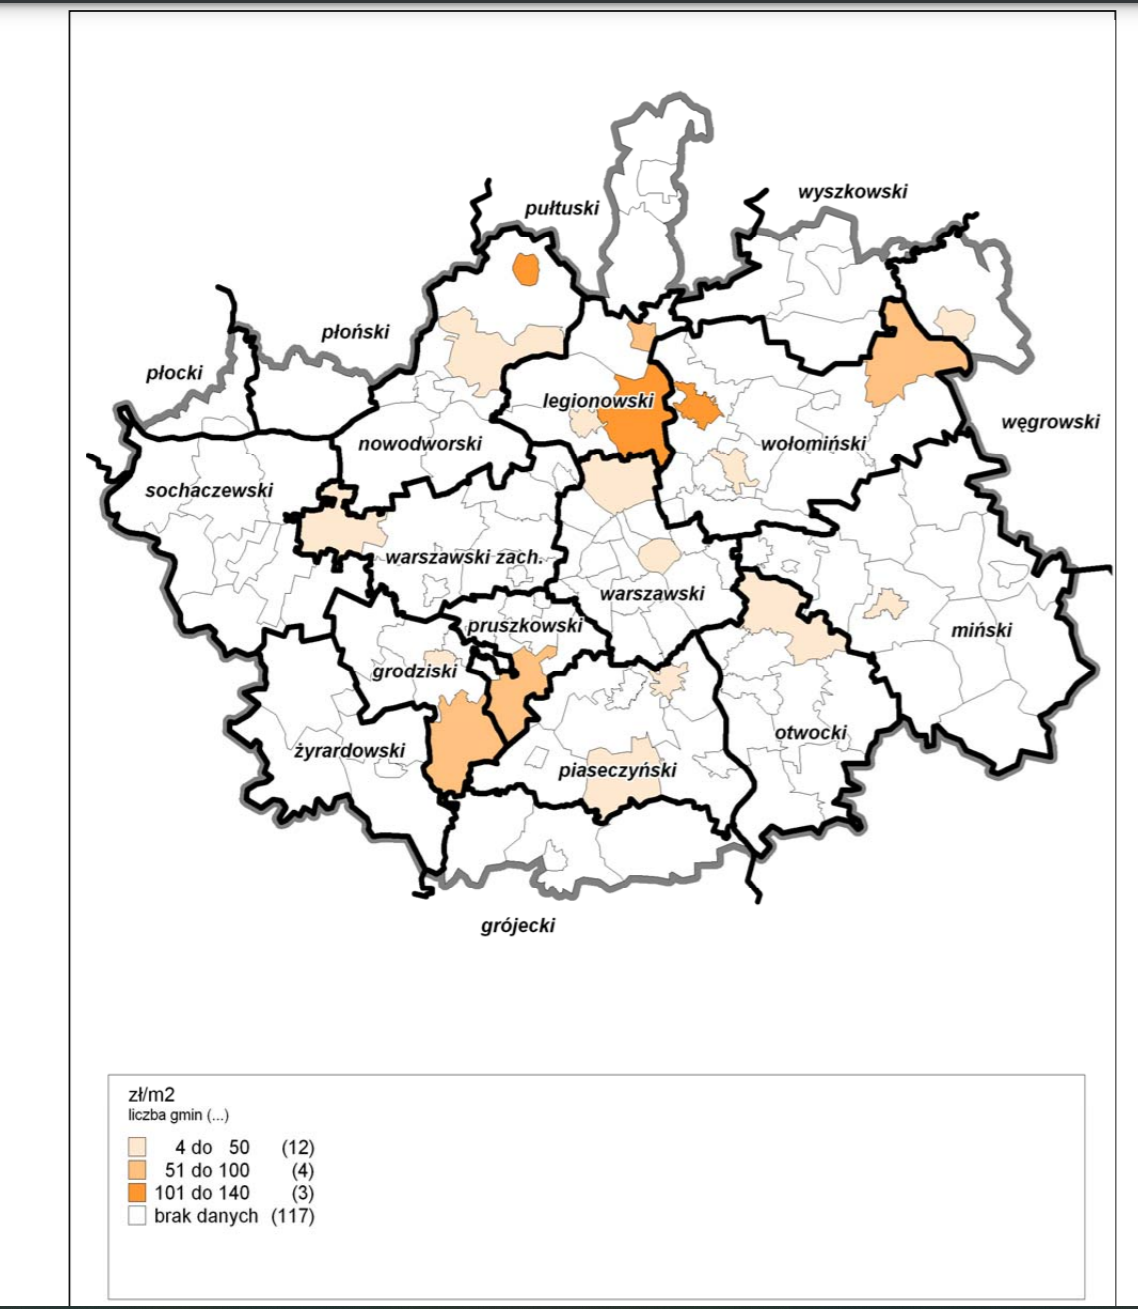 Oferty działek rekreacyjnych w latach 2003-2004, źródło Mazowieckie Źródło Planowania Regionalnego 4(12)2007